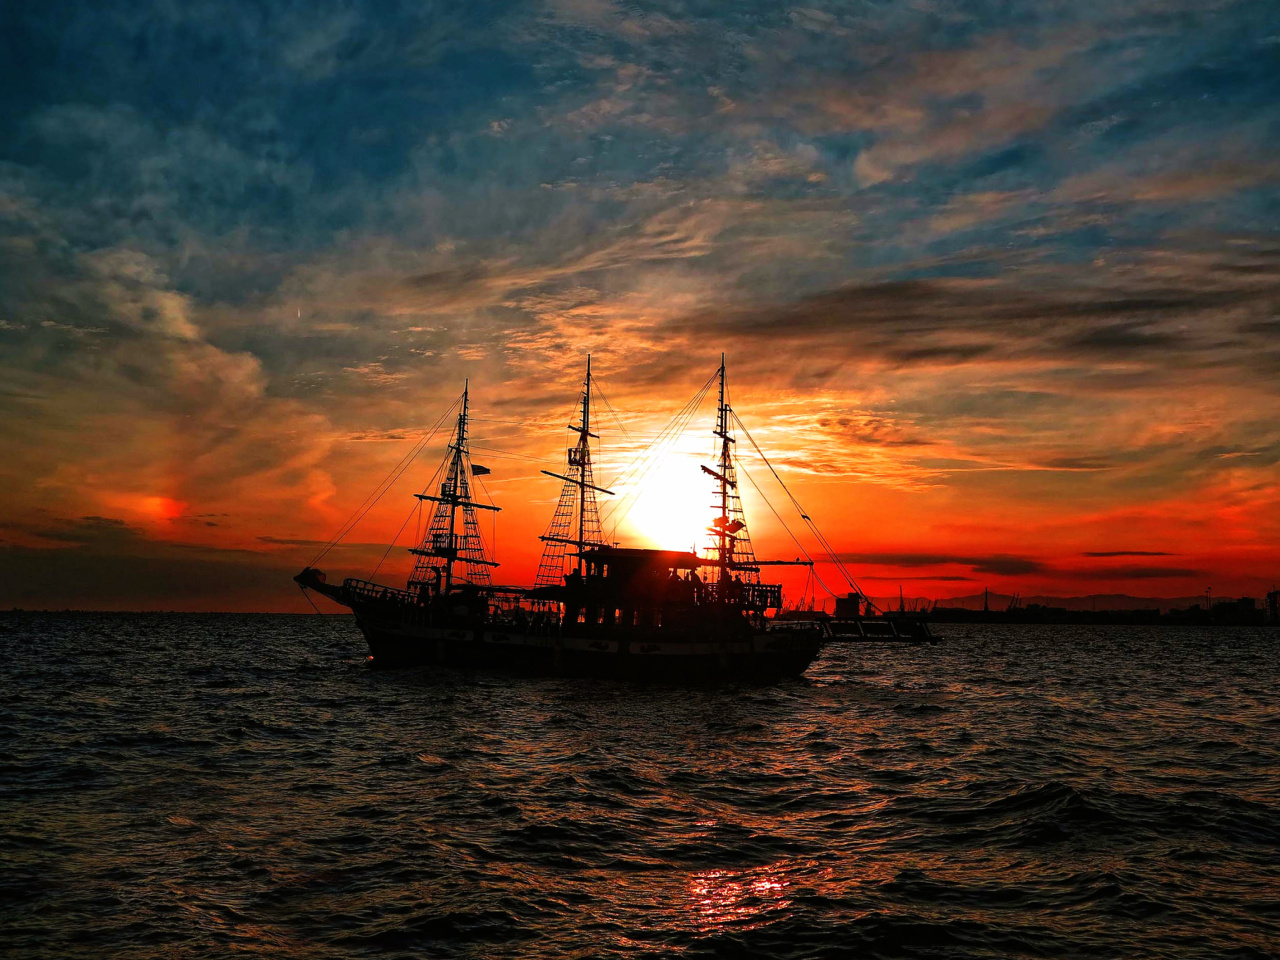 Ship in sunset screenshot #1 1280x960